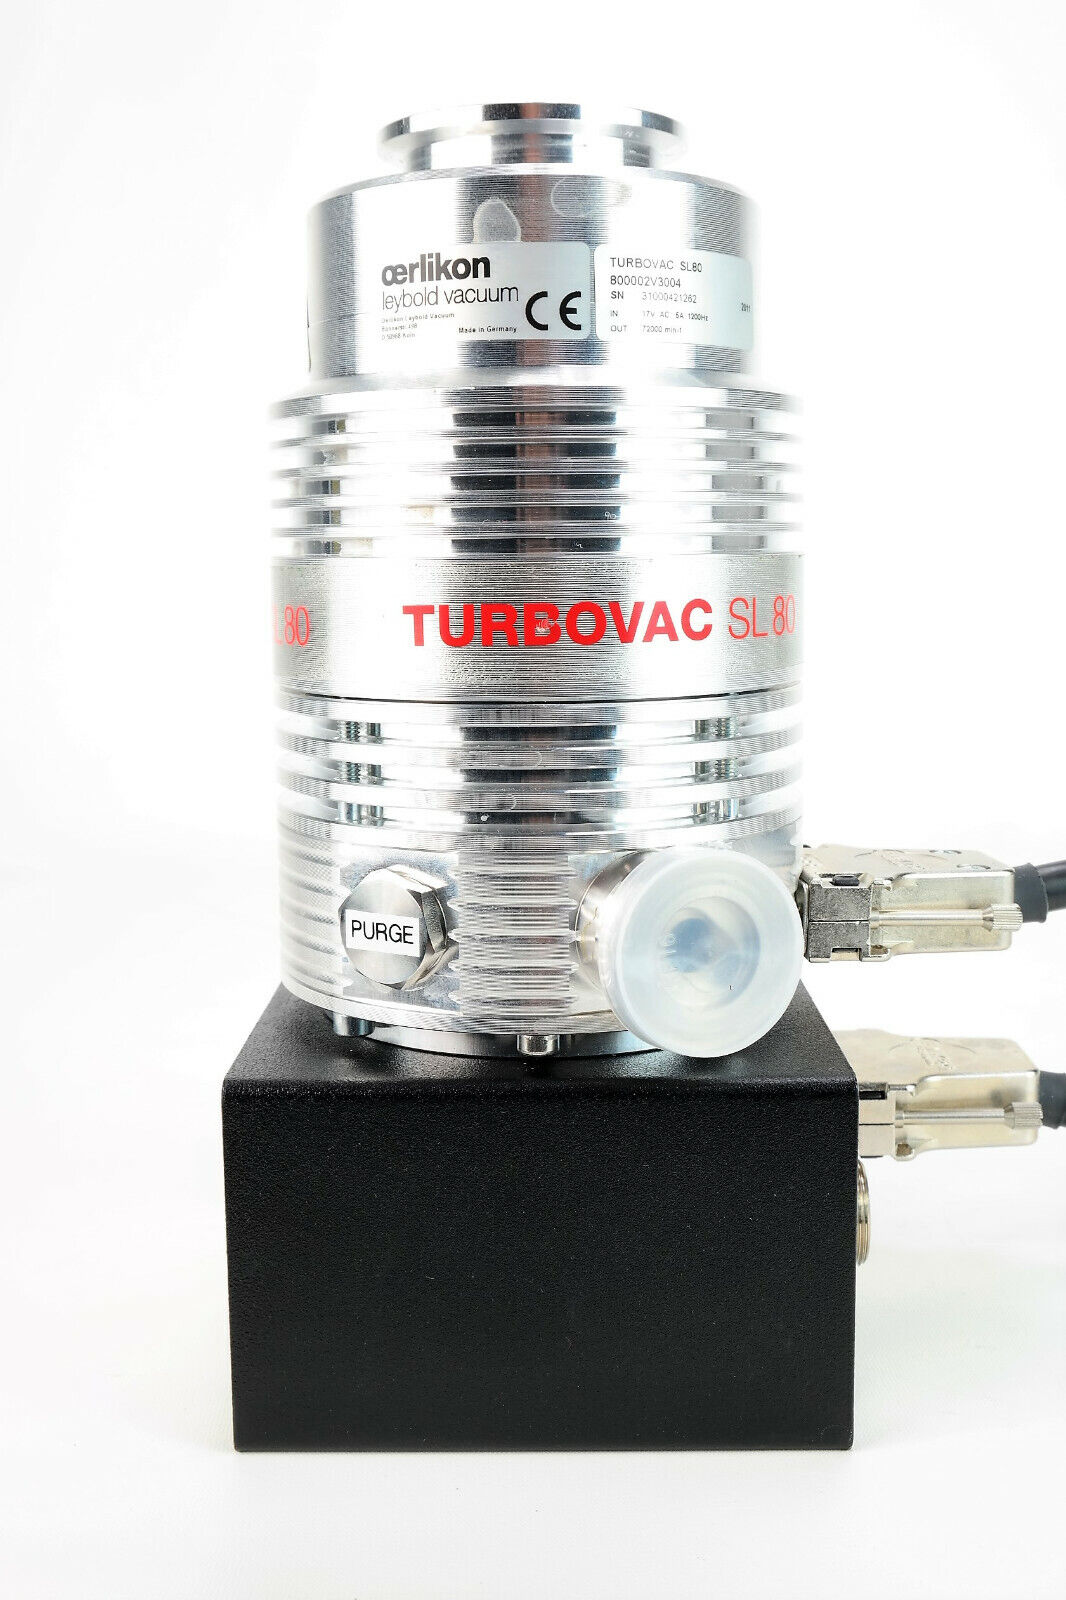 Oerlikon Leybold Turbovac SL80 Turbomolekular-Vakuumpumpe, 800002V3004, Pump